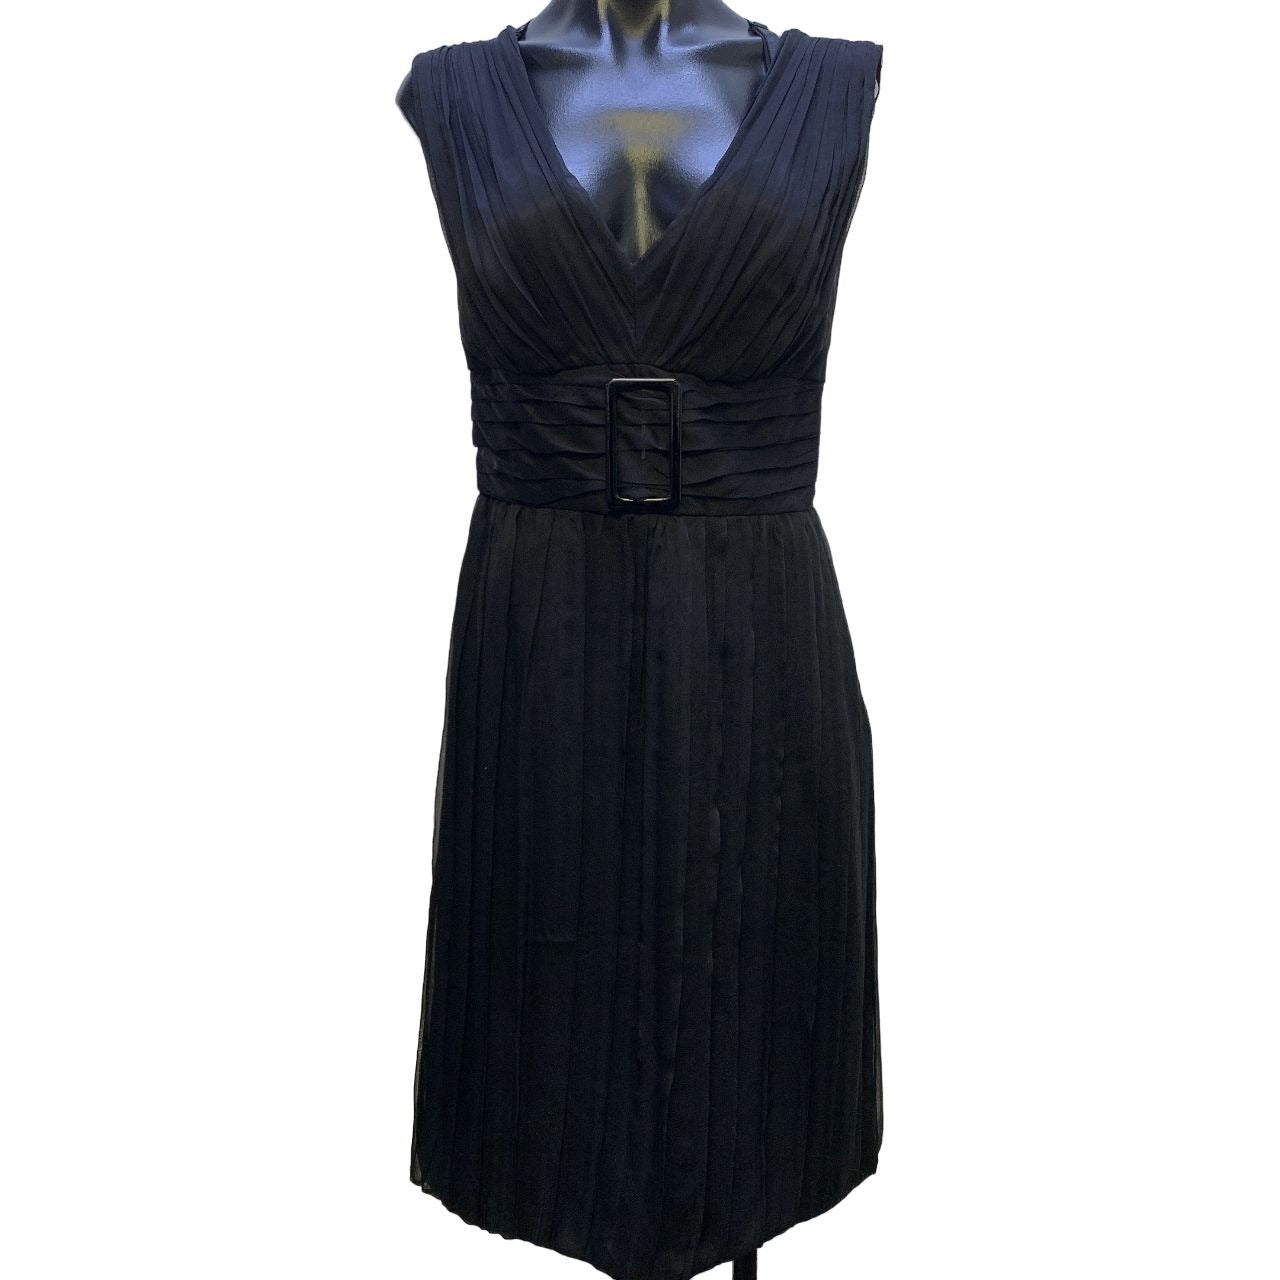 *Alberta Ferretti Black Sleeveless Silk Dress Size 6